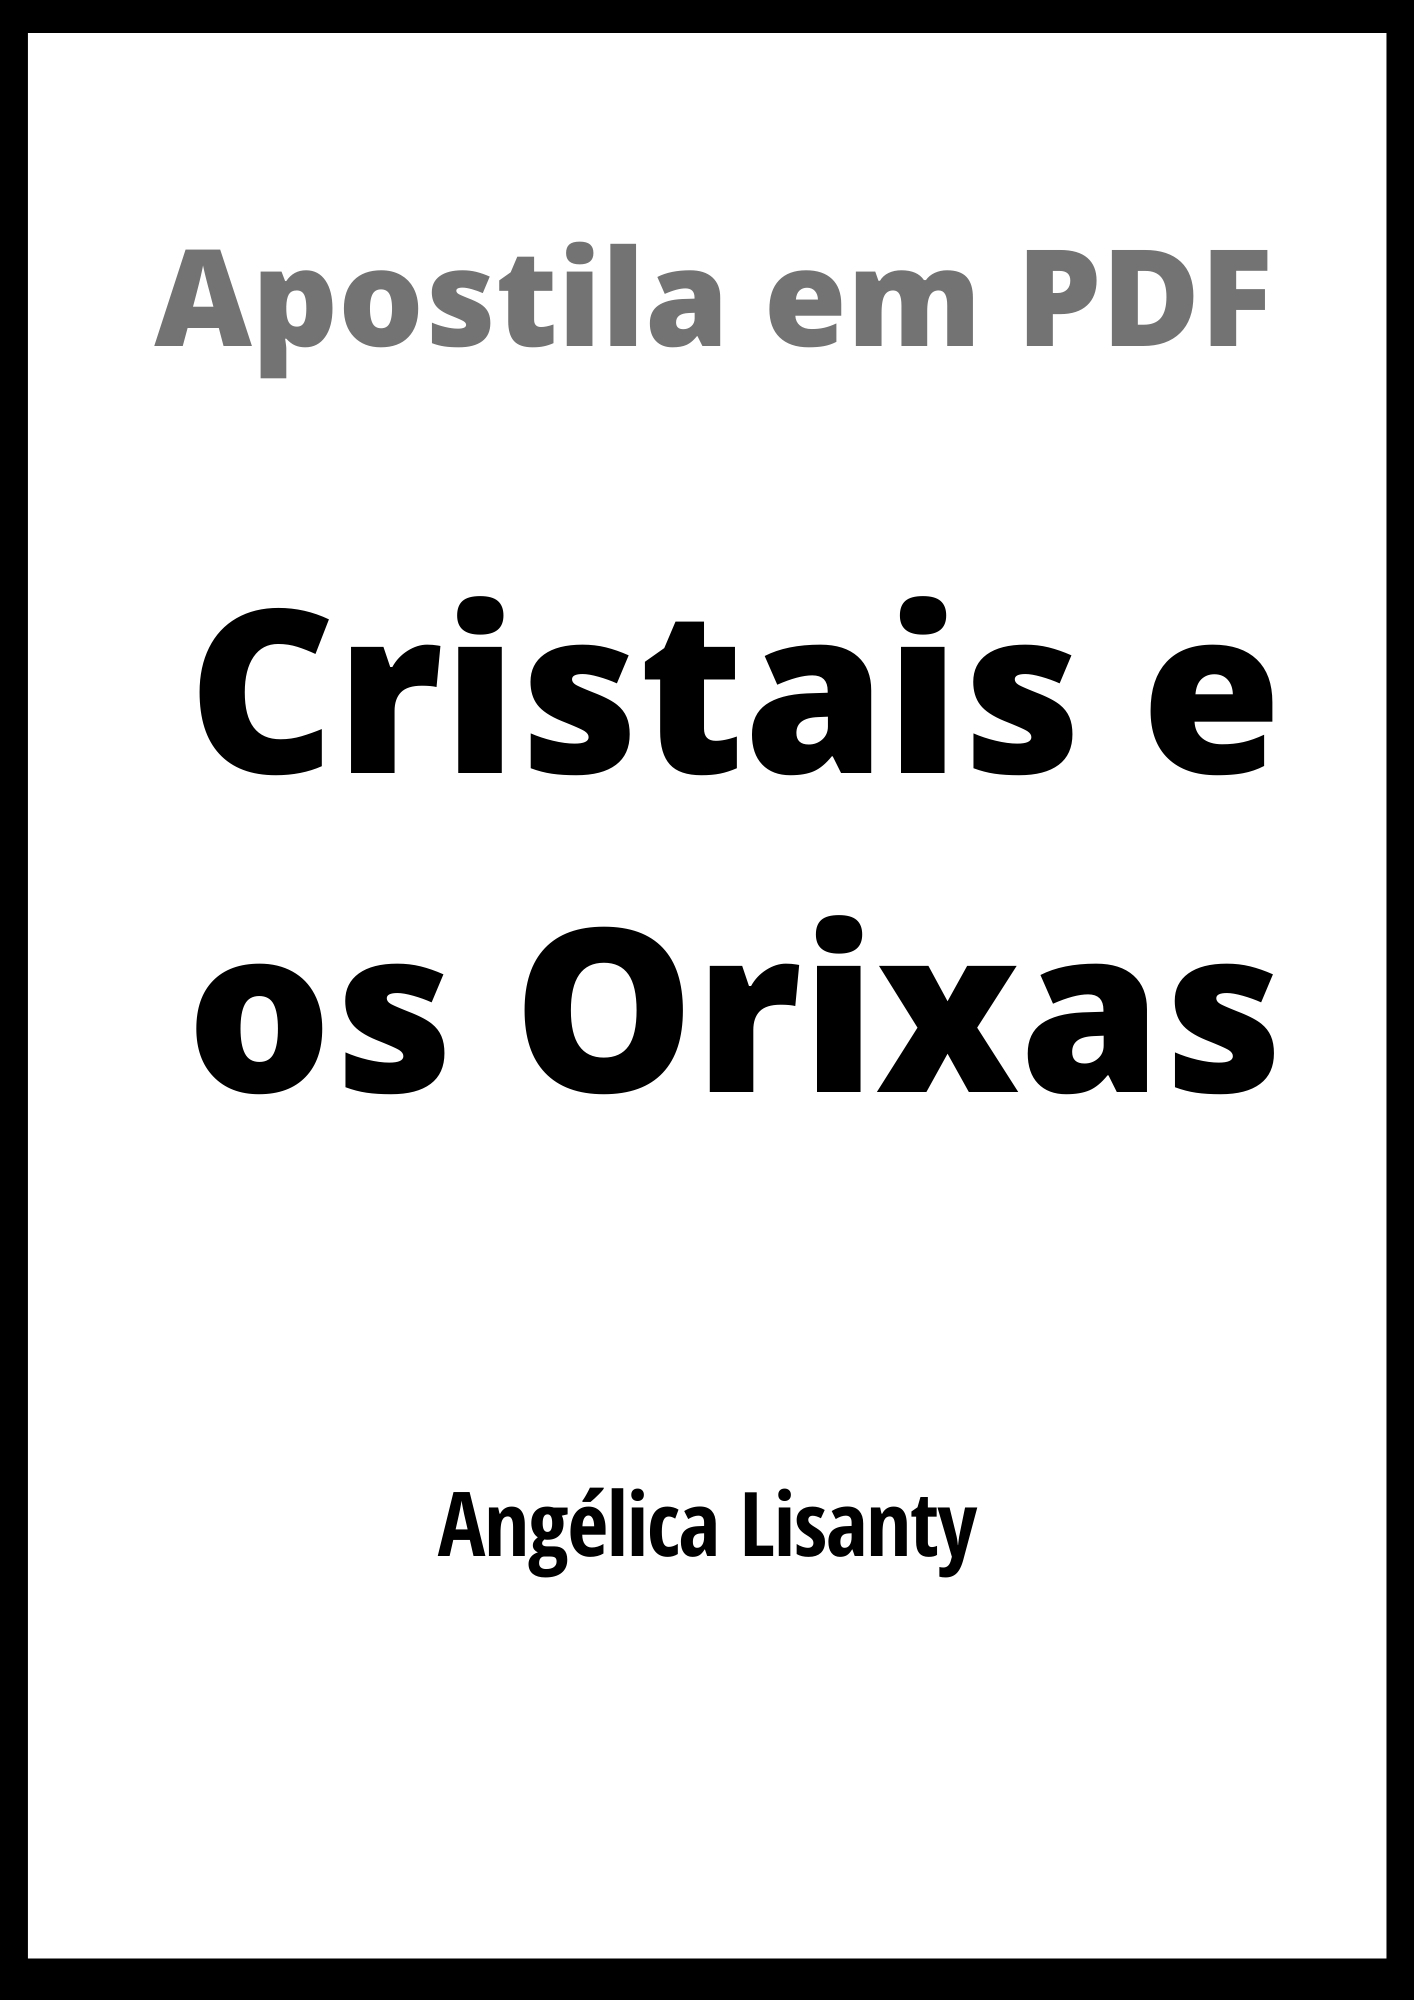 APOSTILA EM PDF - CRISTAIS E OS ORIXÁS